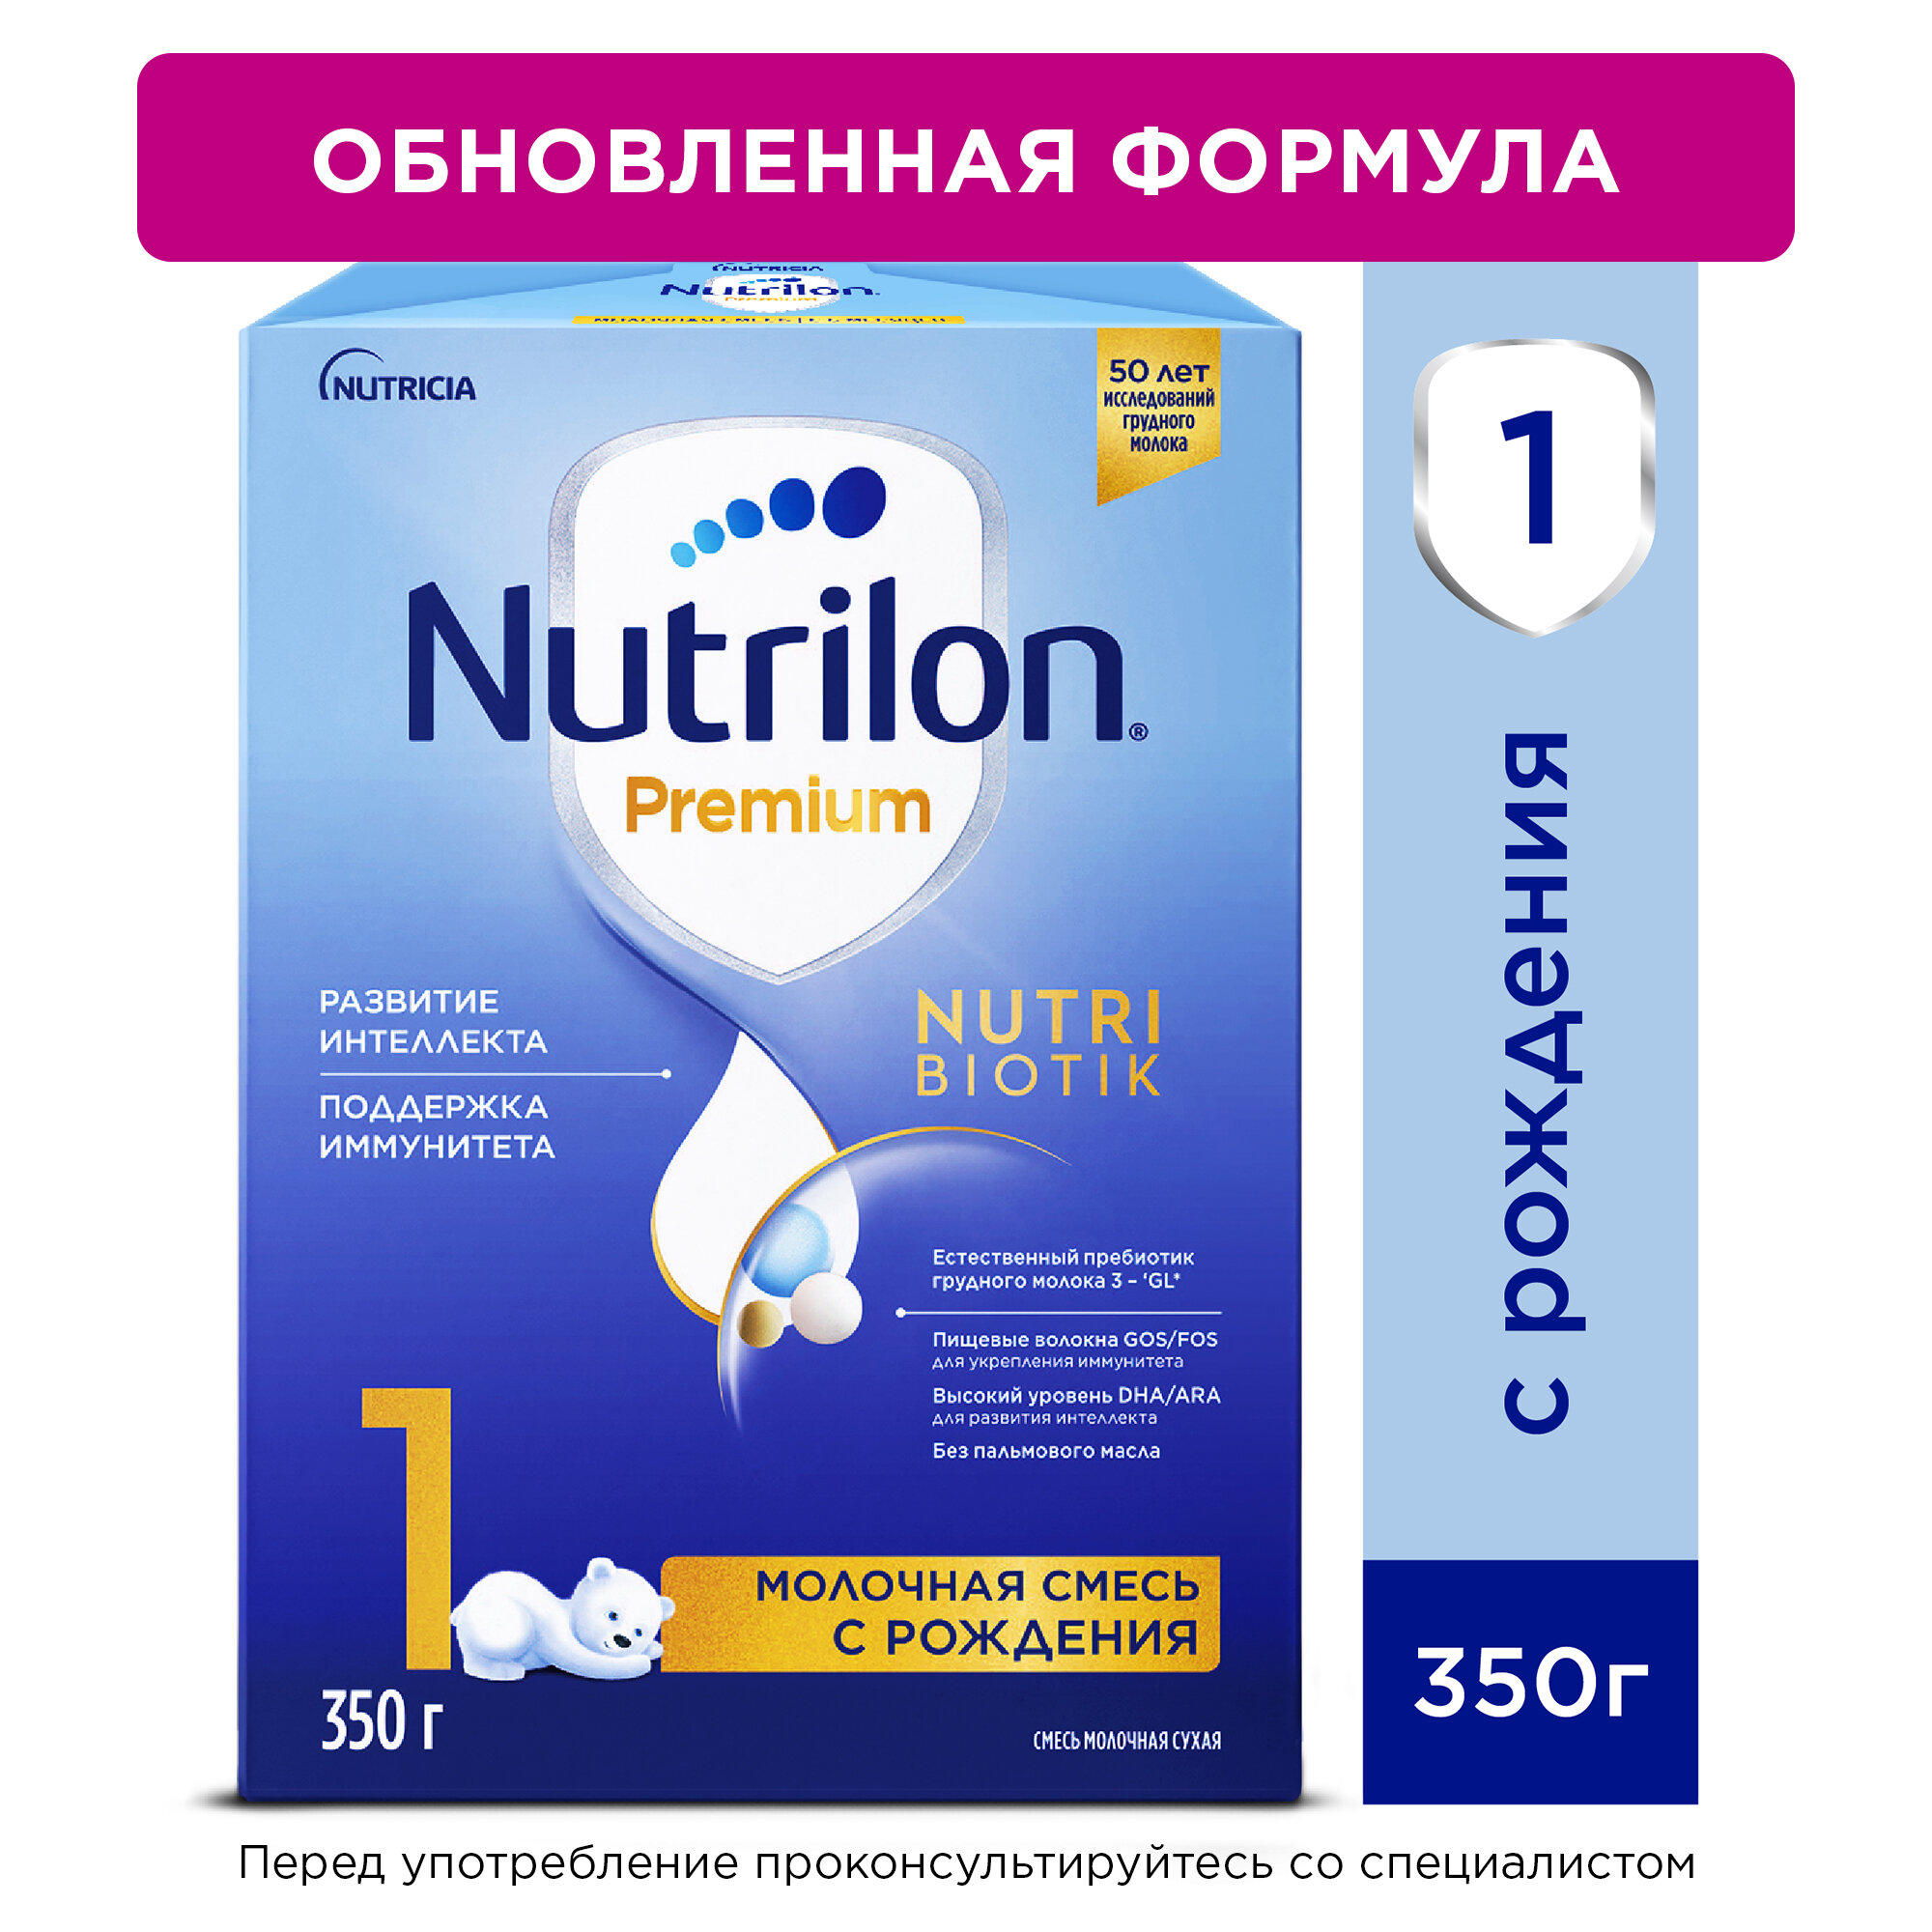 NUTRILON Premium 1 (350)     PronutriPlus   { } 350.